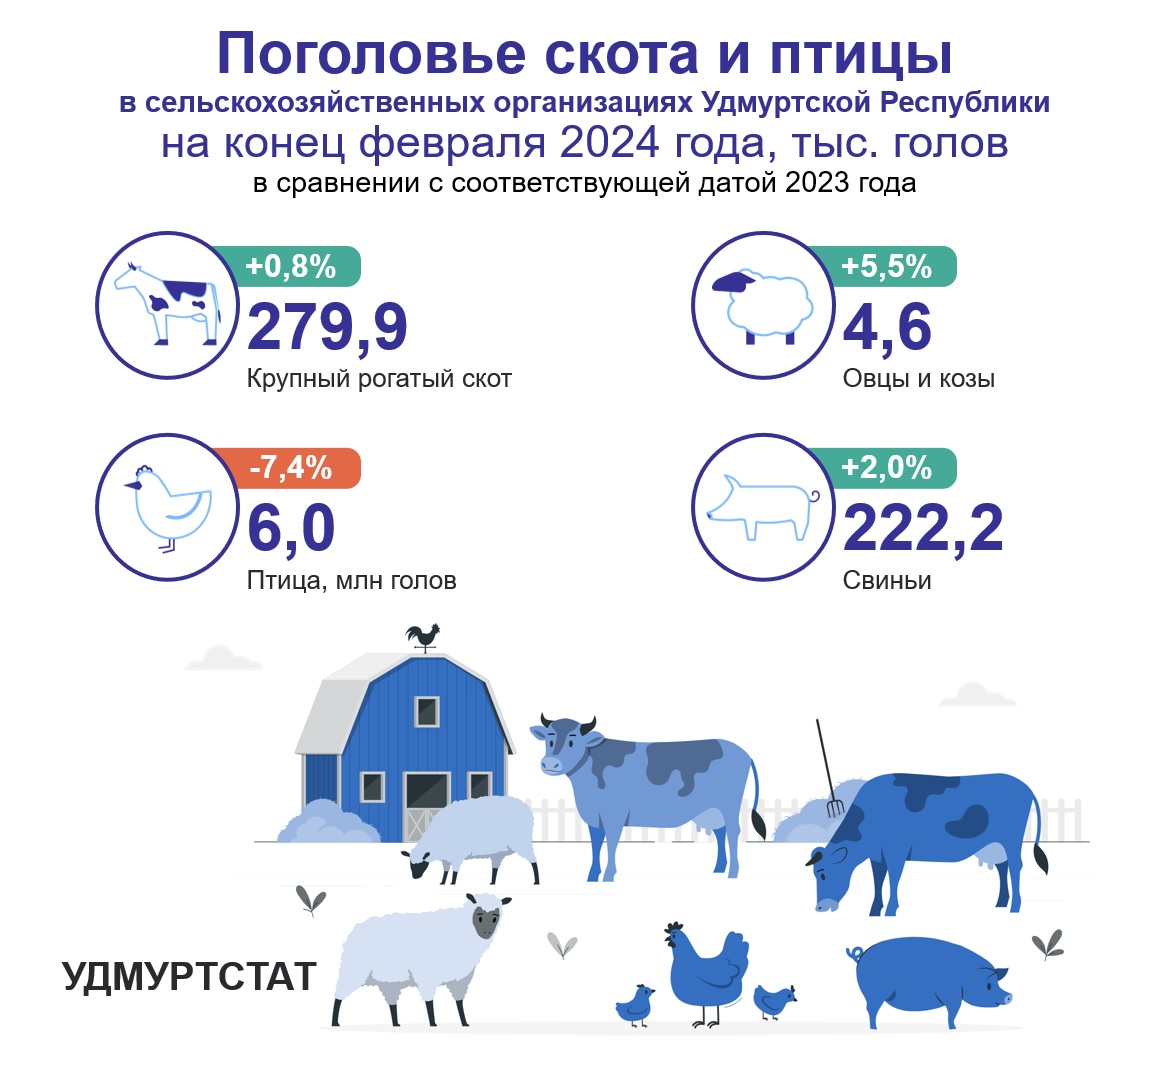 Поголовье скота и птицы на конец февраля 2024 года.